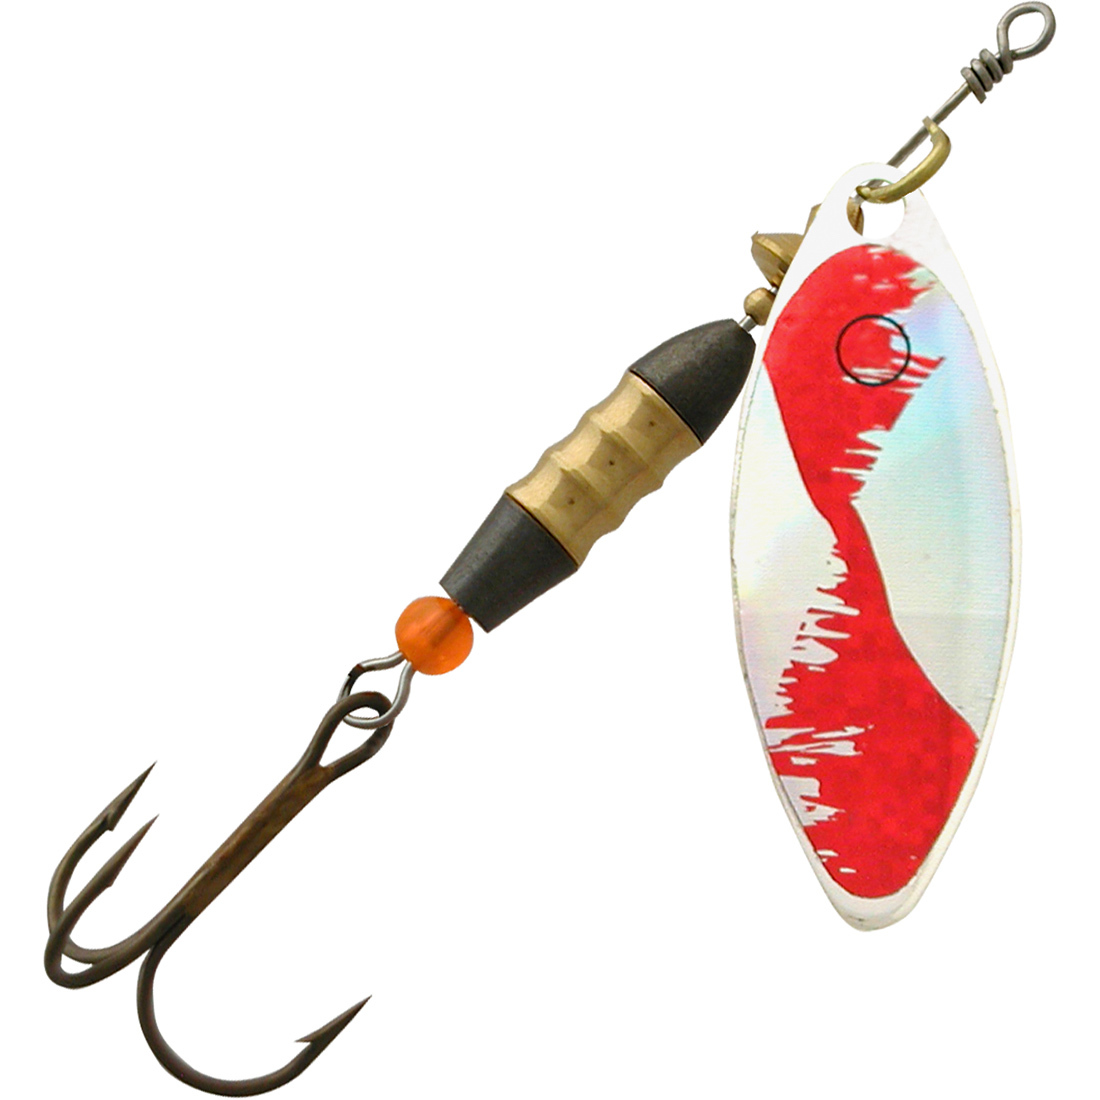 Блесна для рыбалки AQUA LONG 12,0g, лепесток № 3, цвет LO-11 (серебро, красный), 1 штука